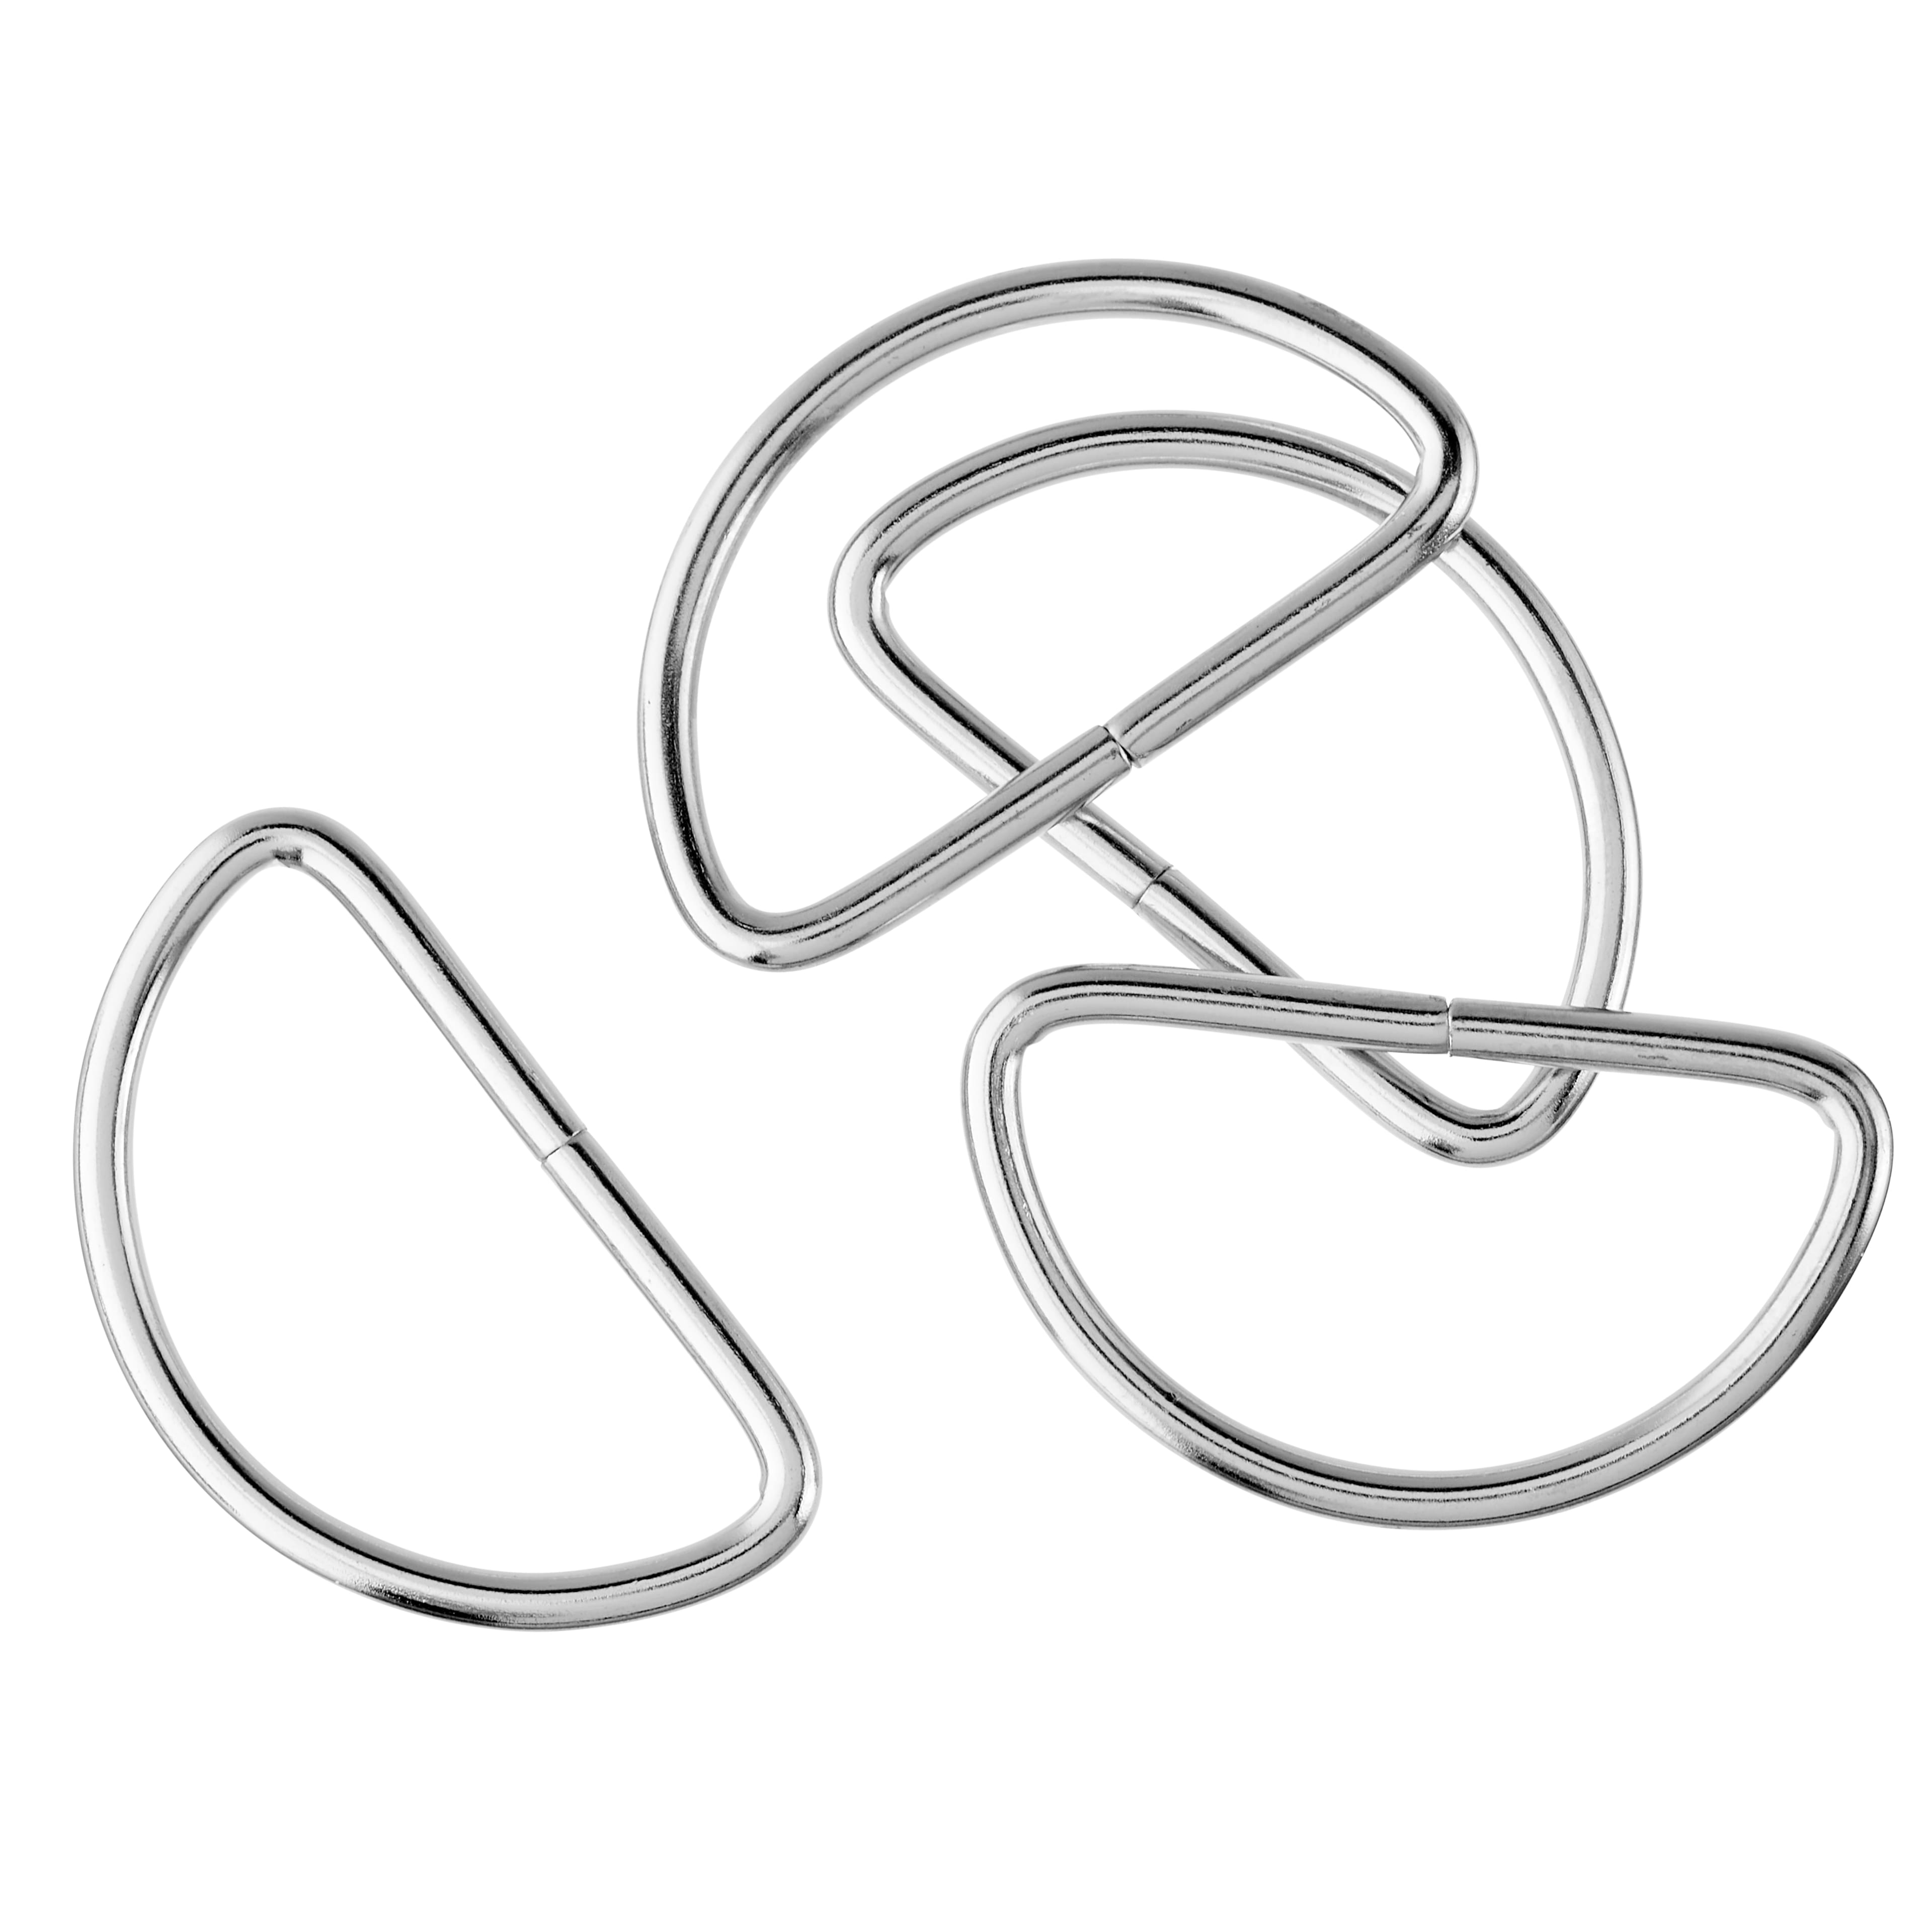 Loops & Threads 1 1/2 Metal D-Rings - Each